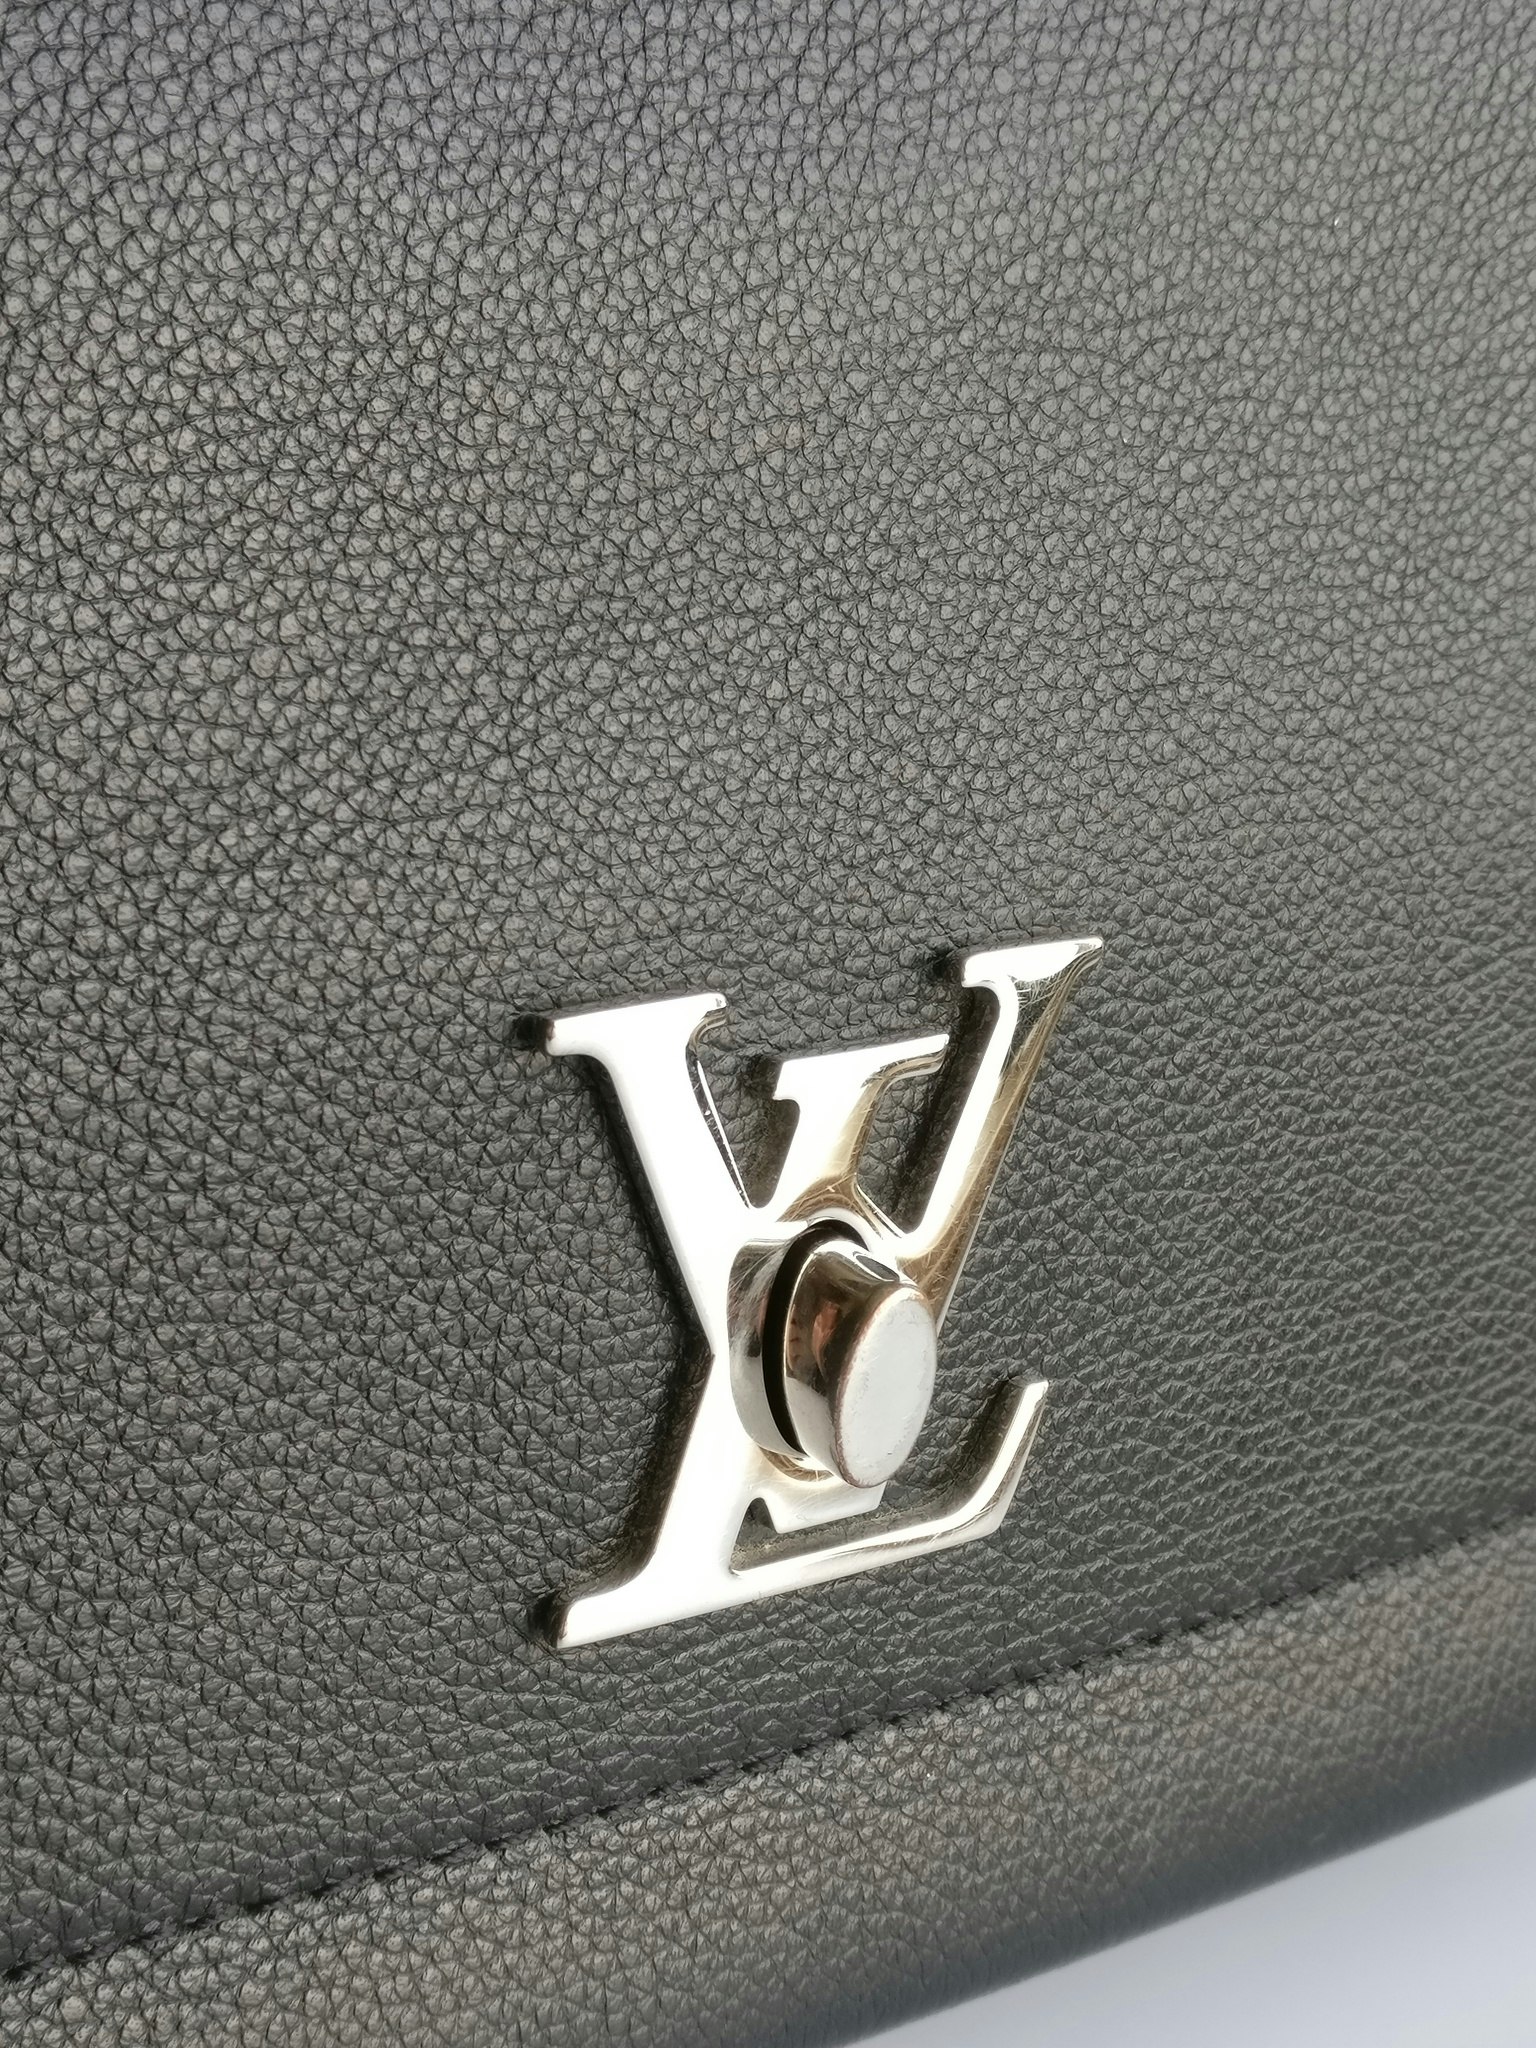 Louis Vuitton, Bags, Authentic Louis Vuitton Lockme Ii Noir Brand New